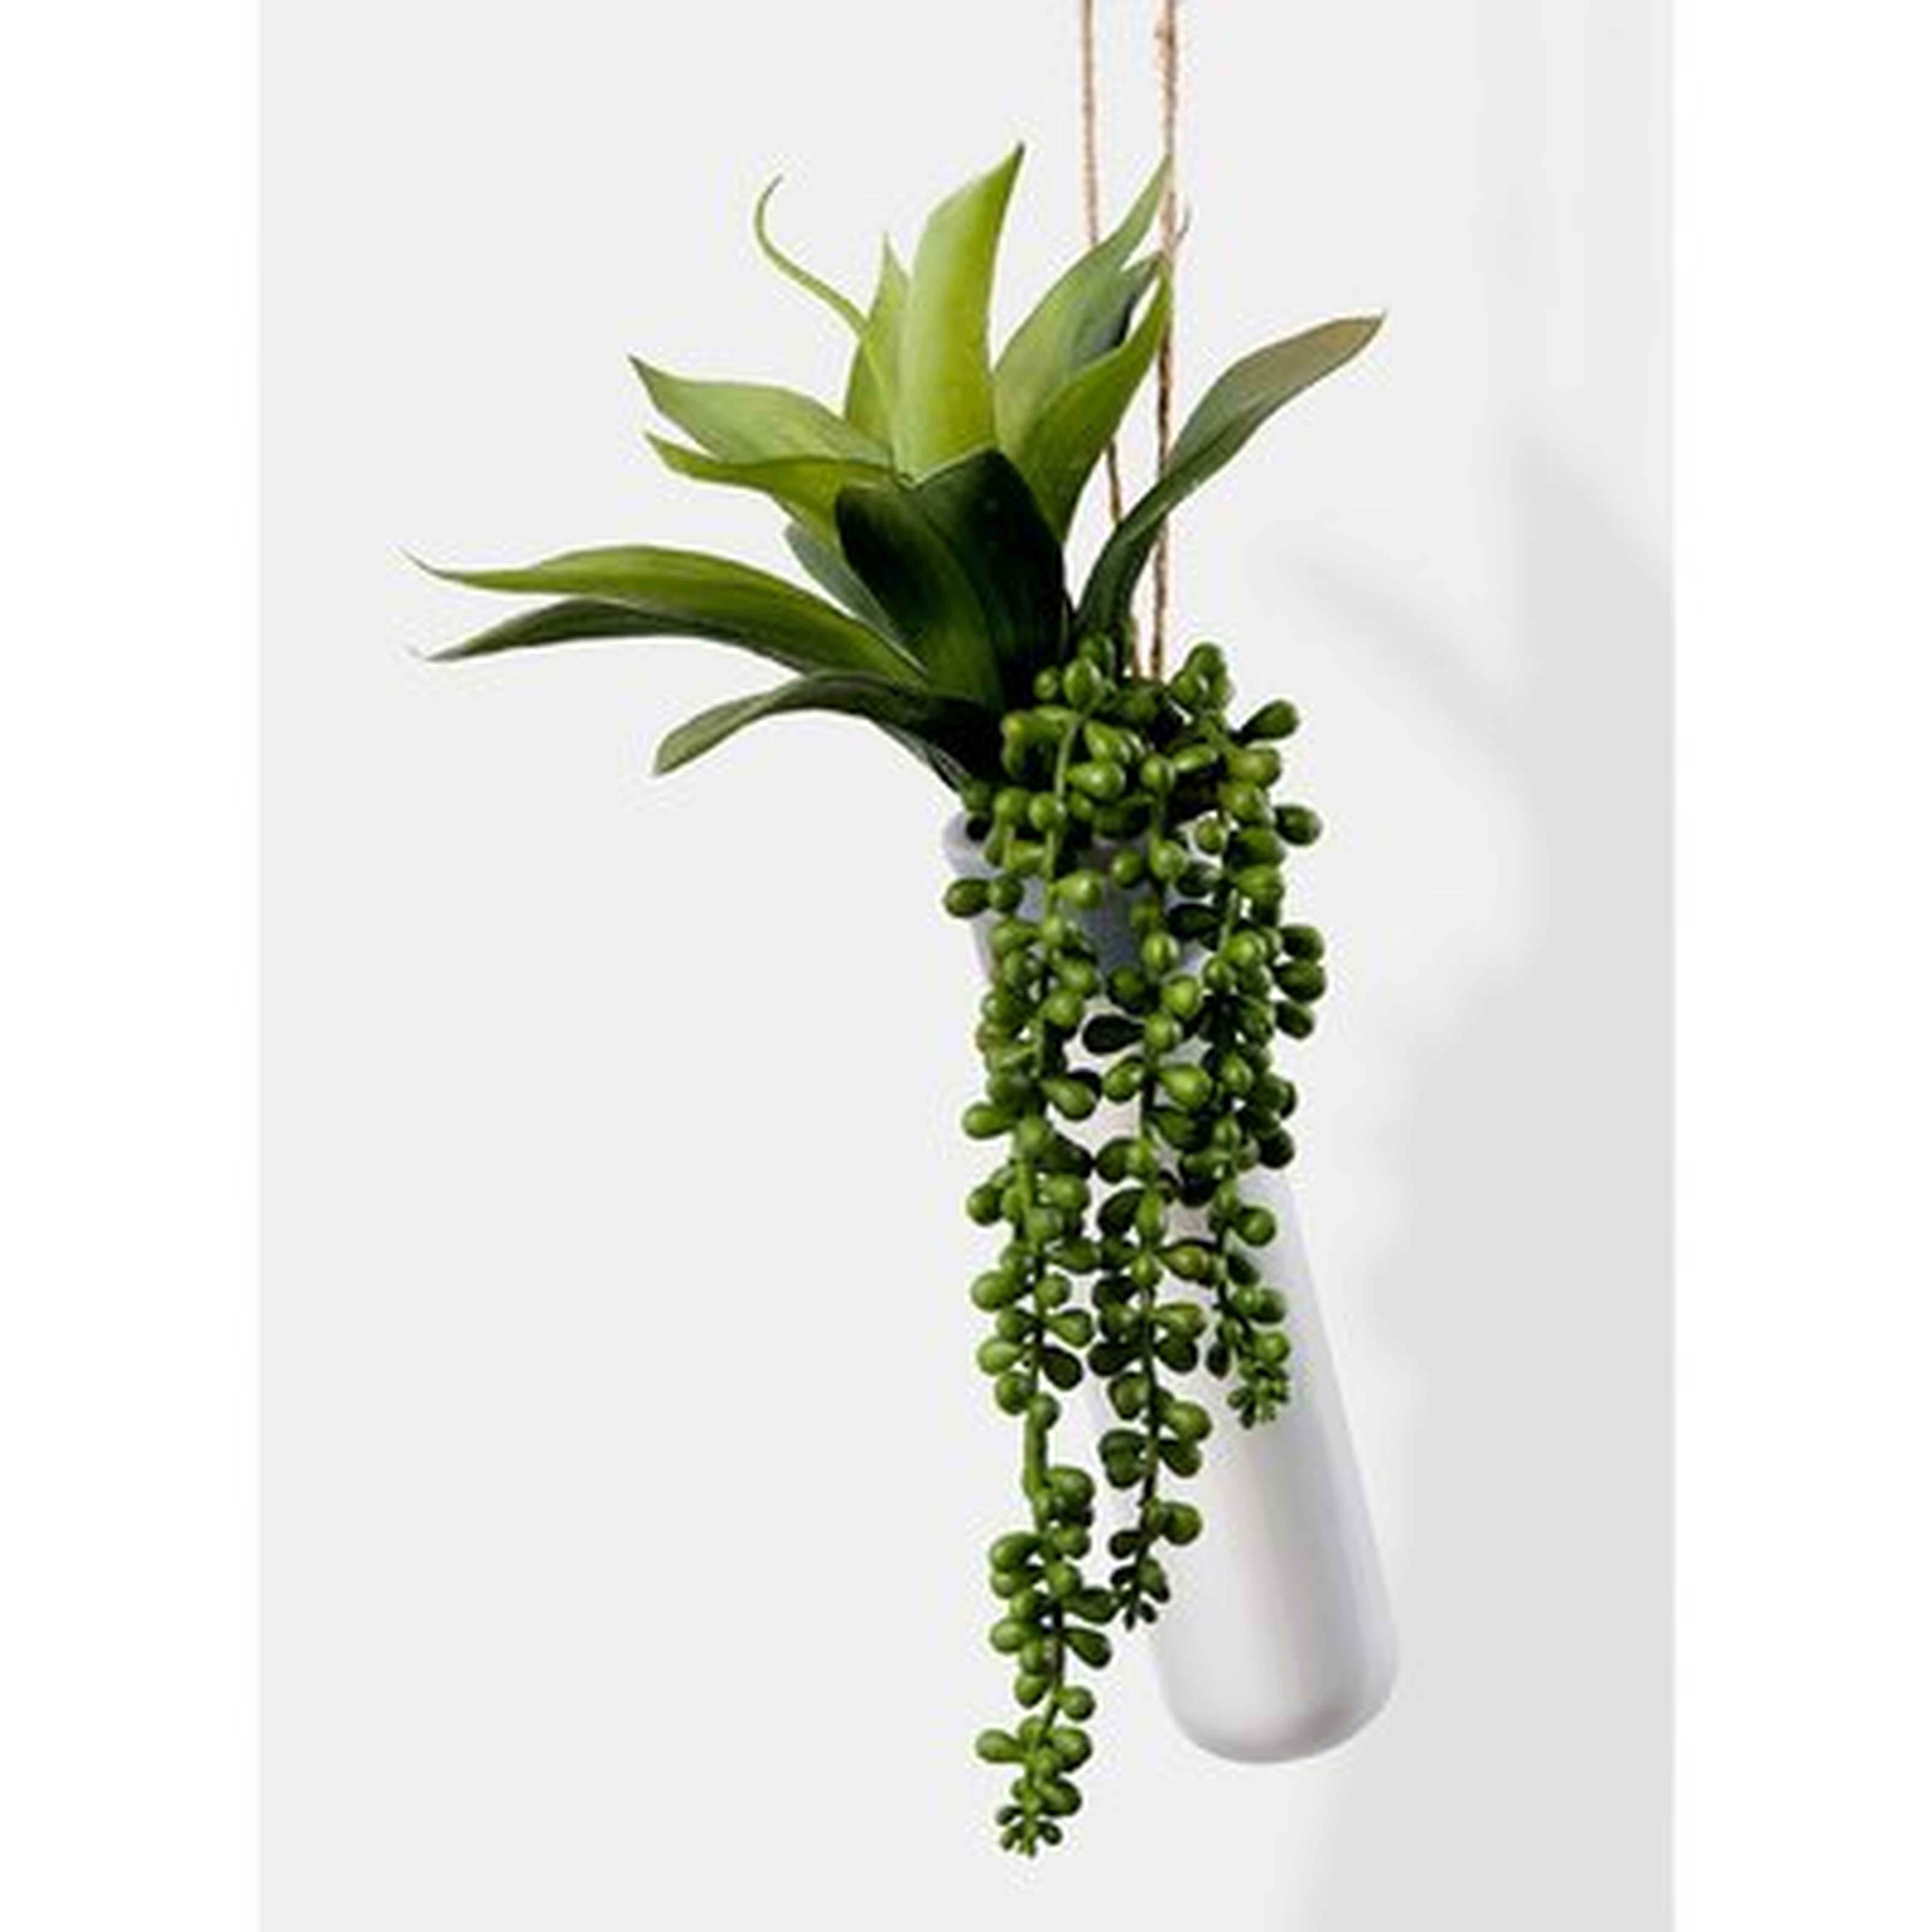 Hanging Succulent Plant in Ceramic Planter - Wayfair